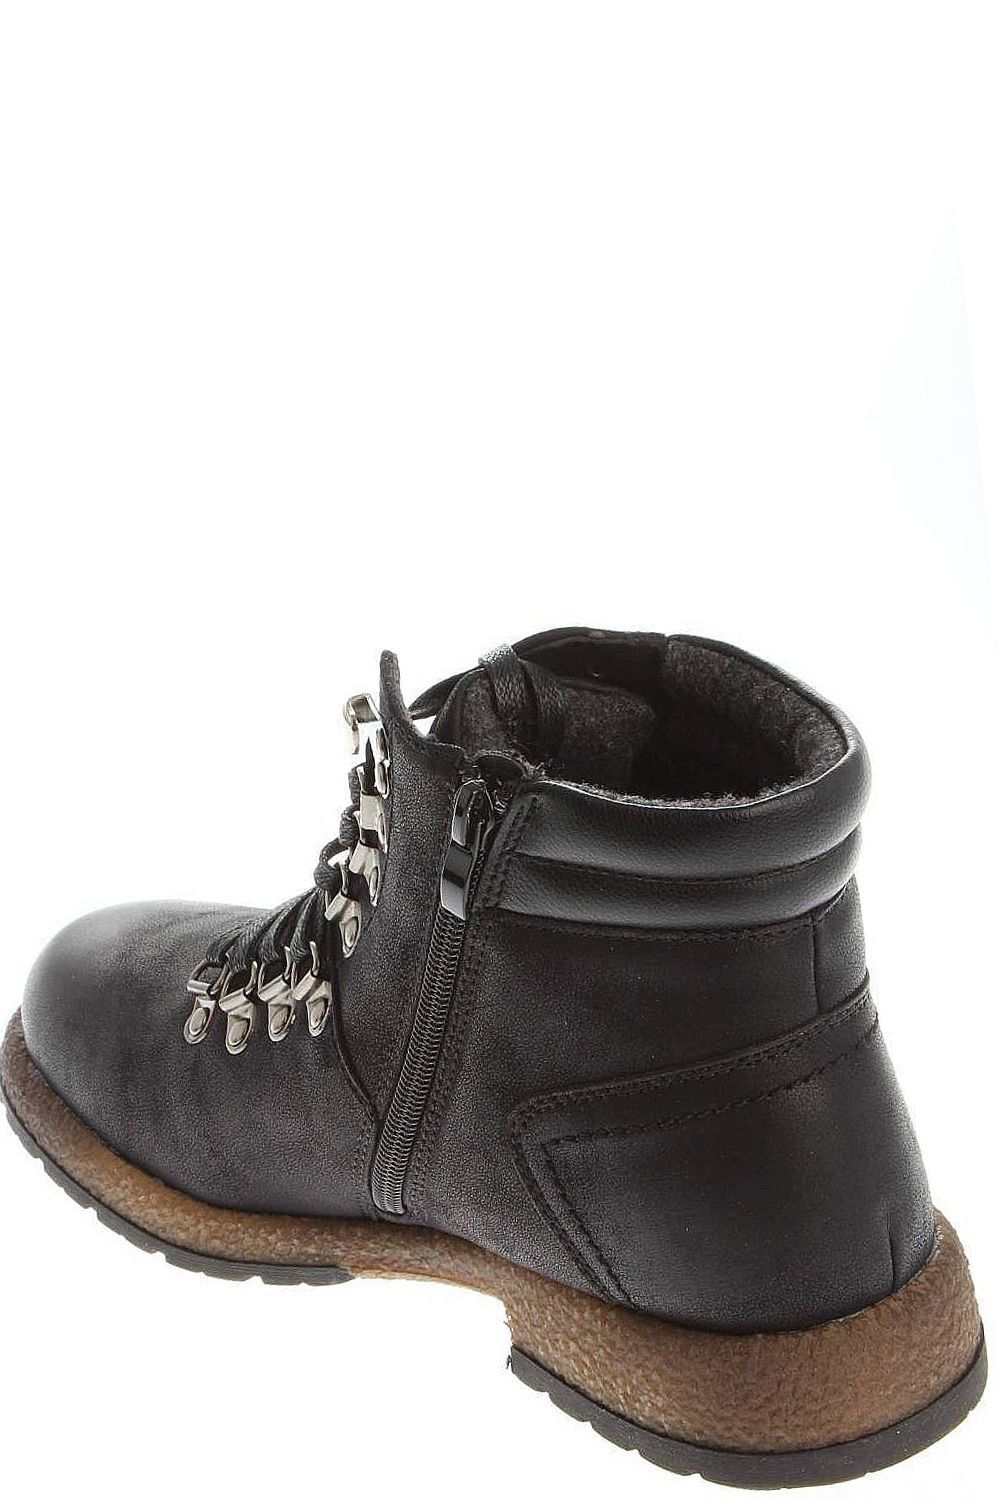 Ботинки Tesoro, размер 41, цвет черный 178668/12-01 - фото 7